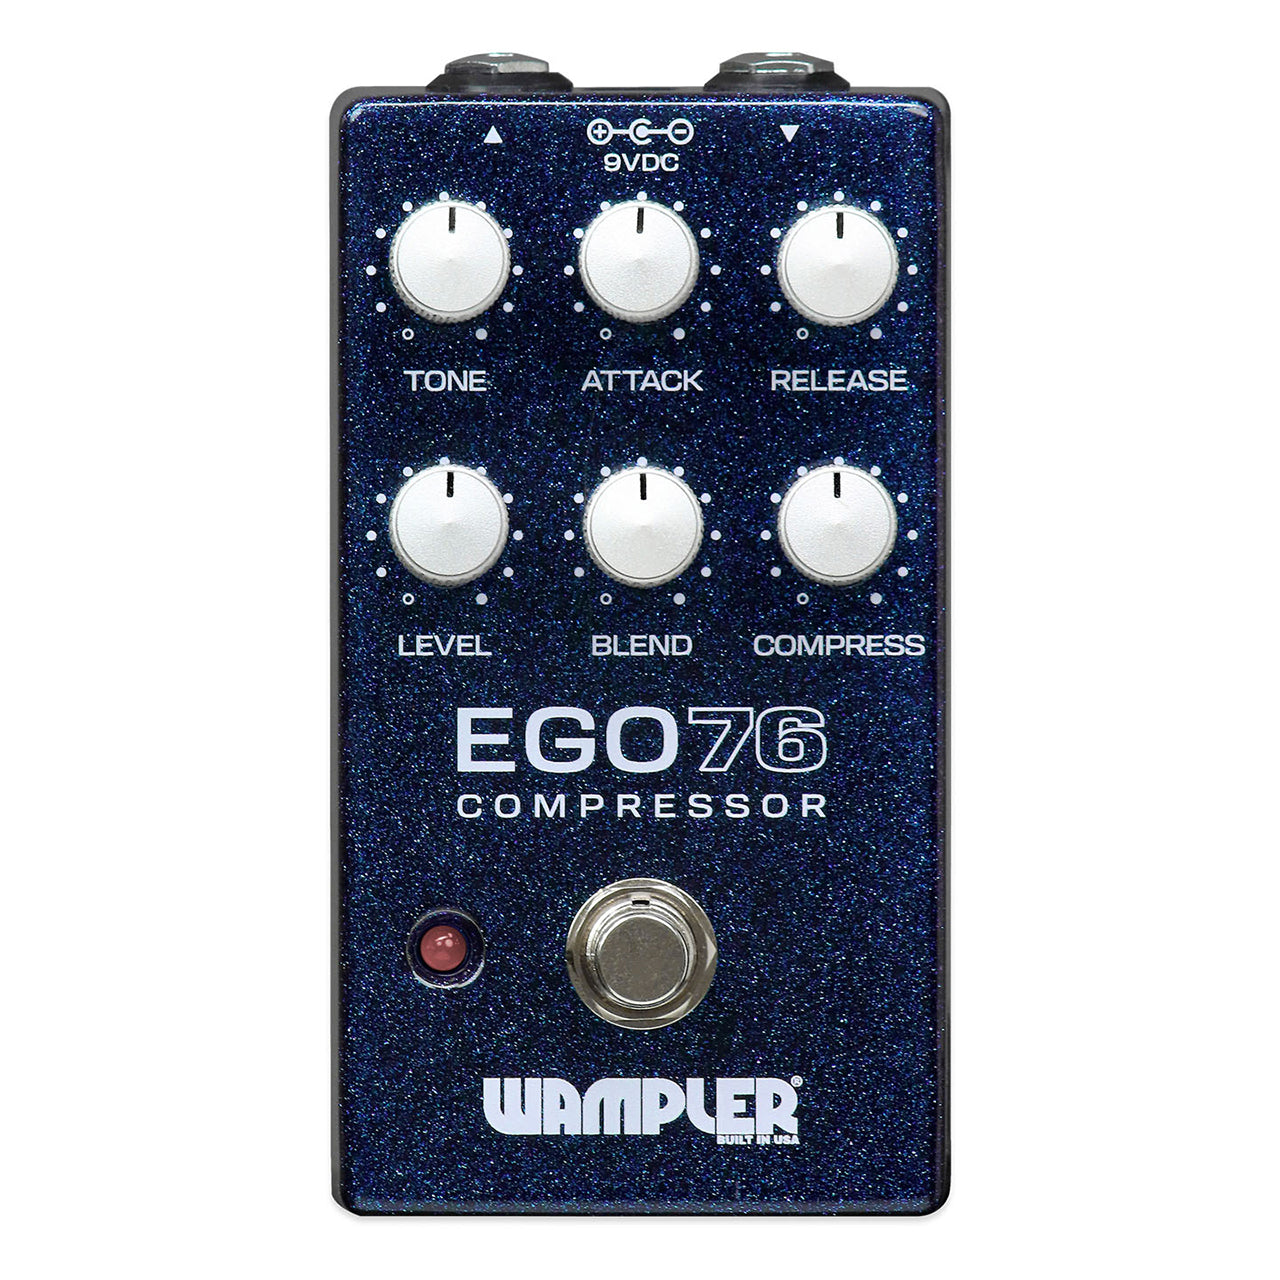 Wampler Ego 76 Compressor Effects Pedal